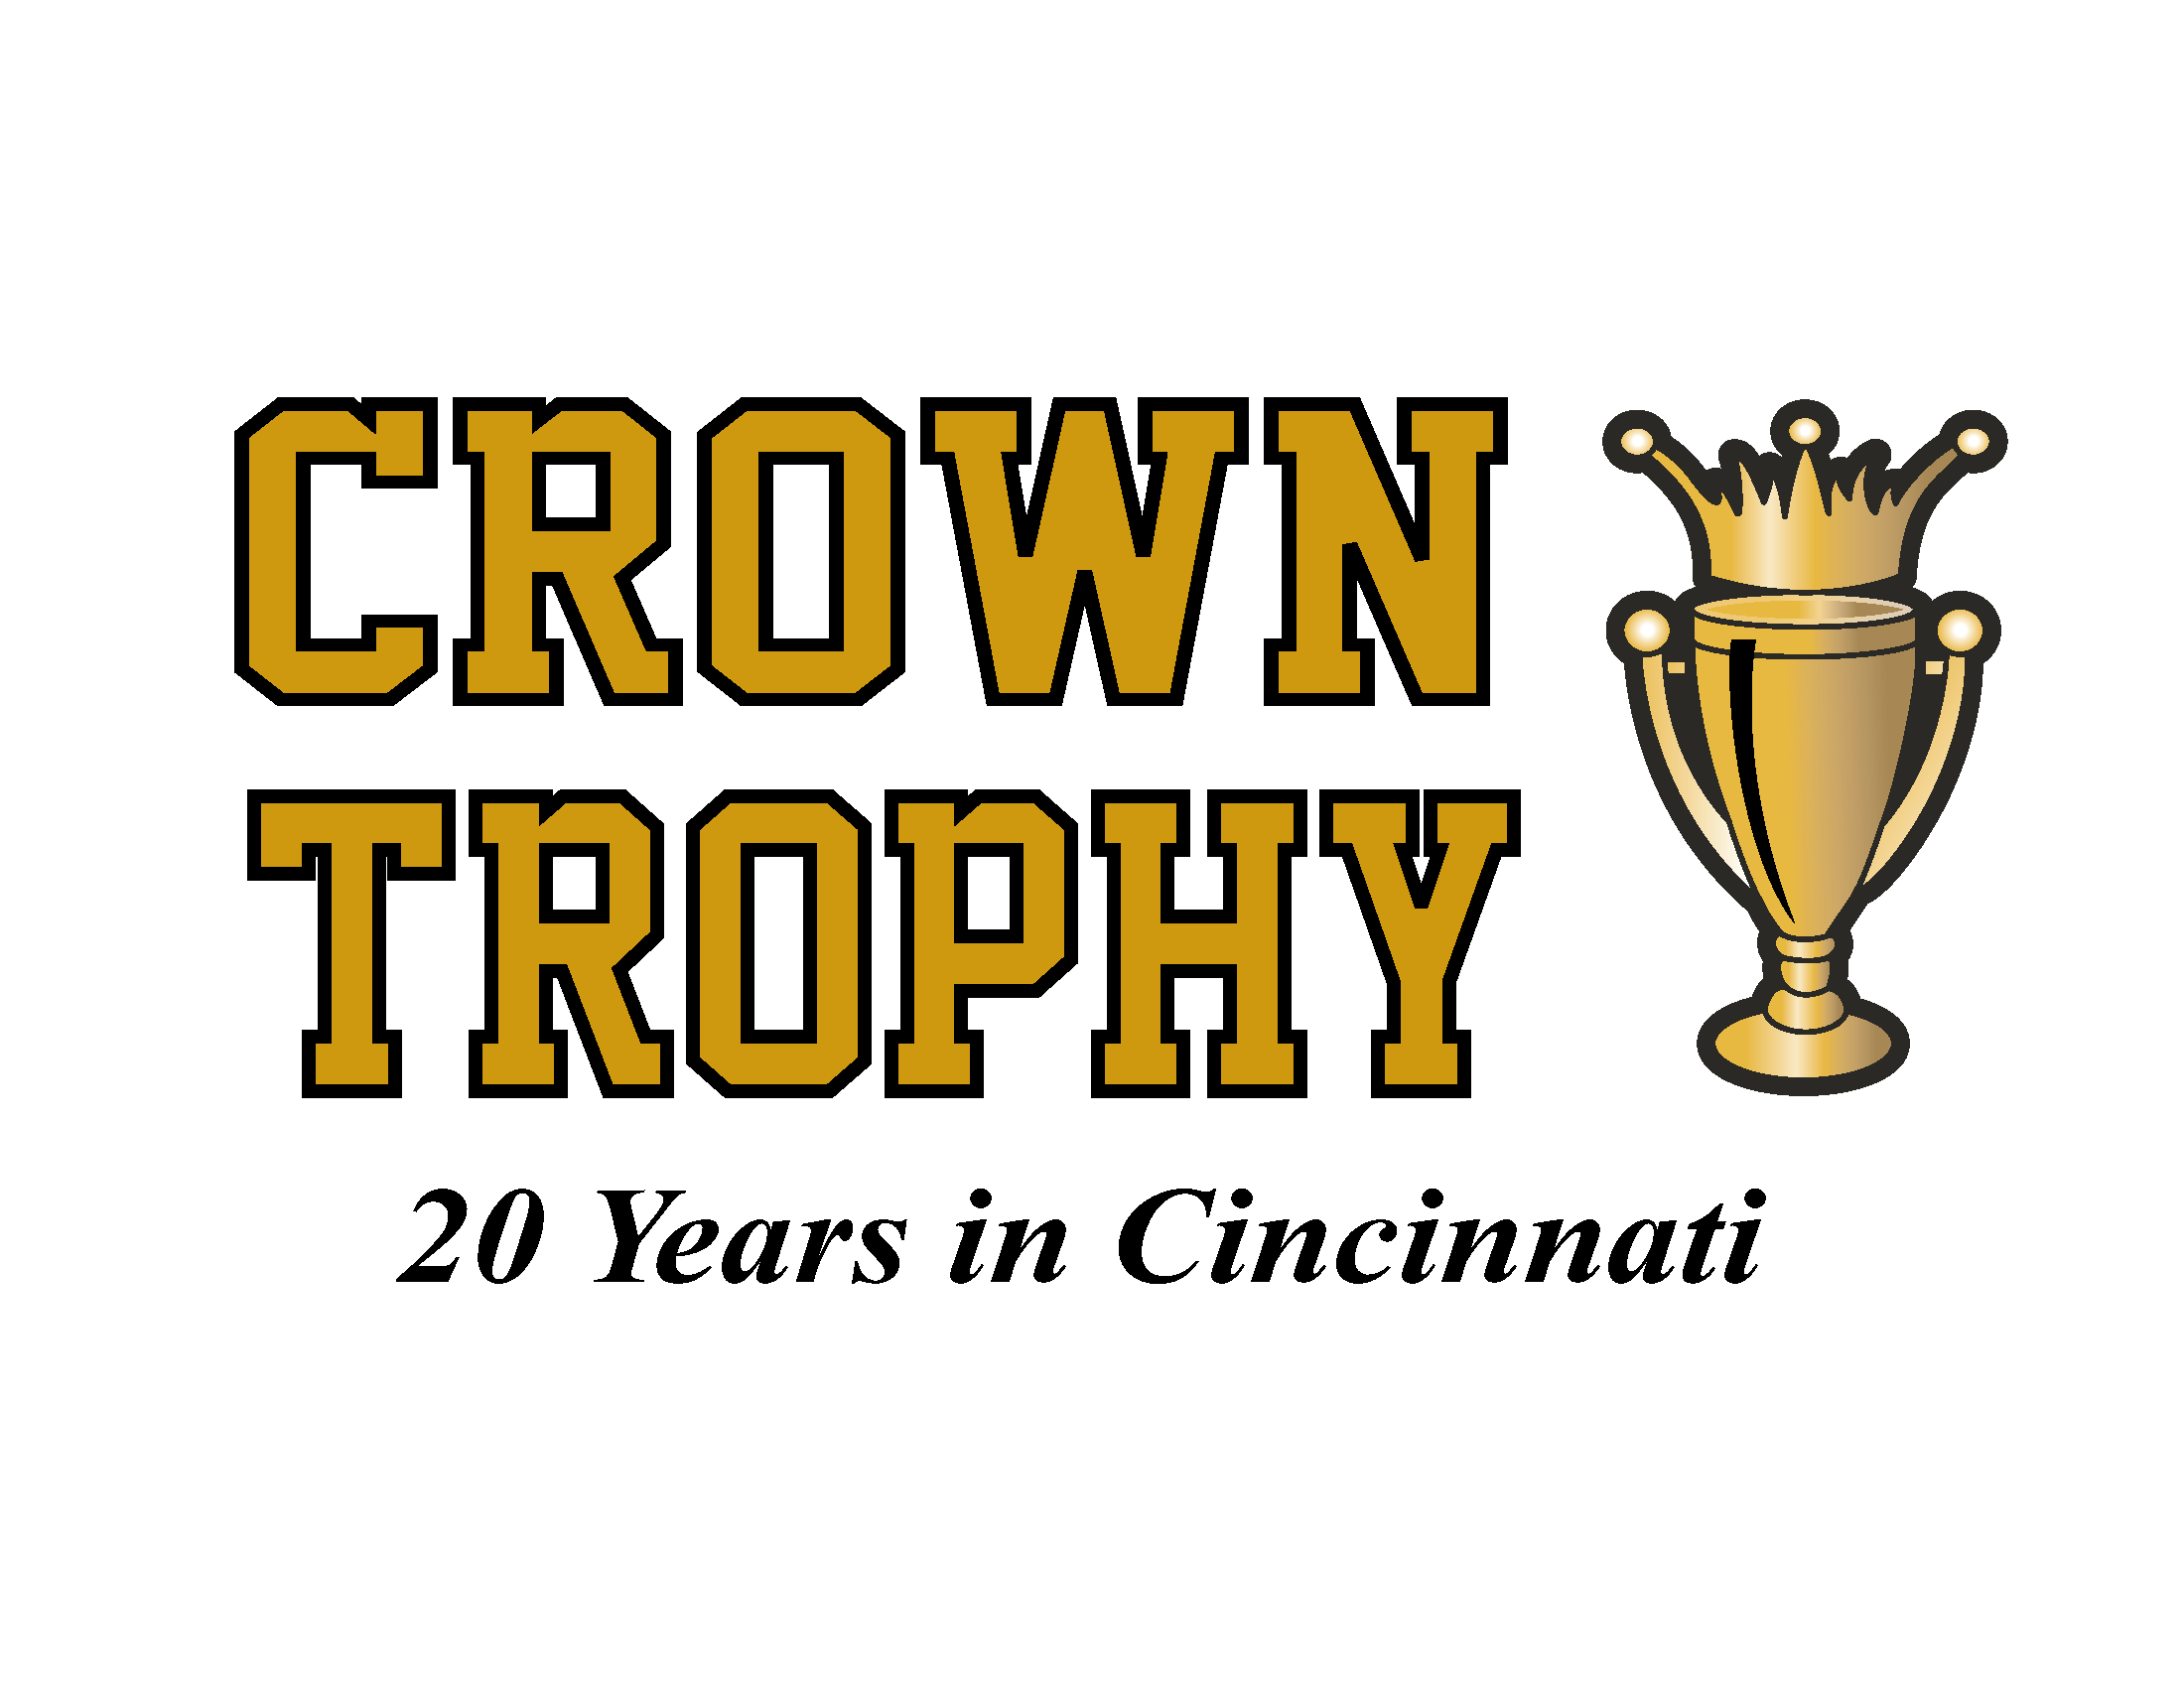 Crown Trophy